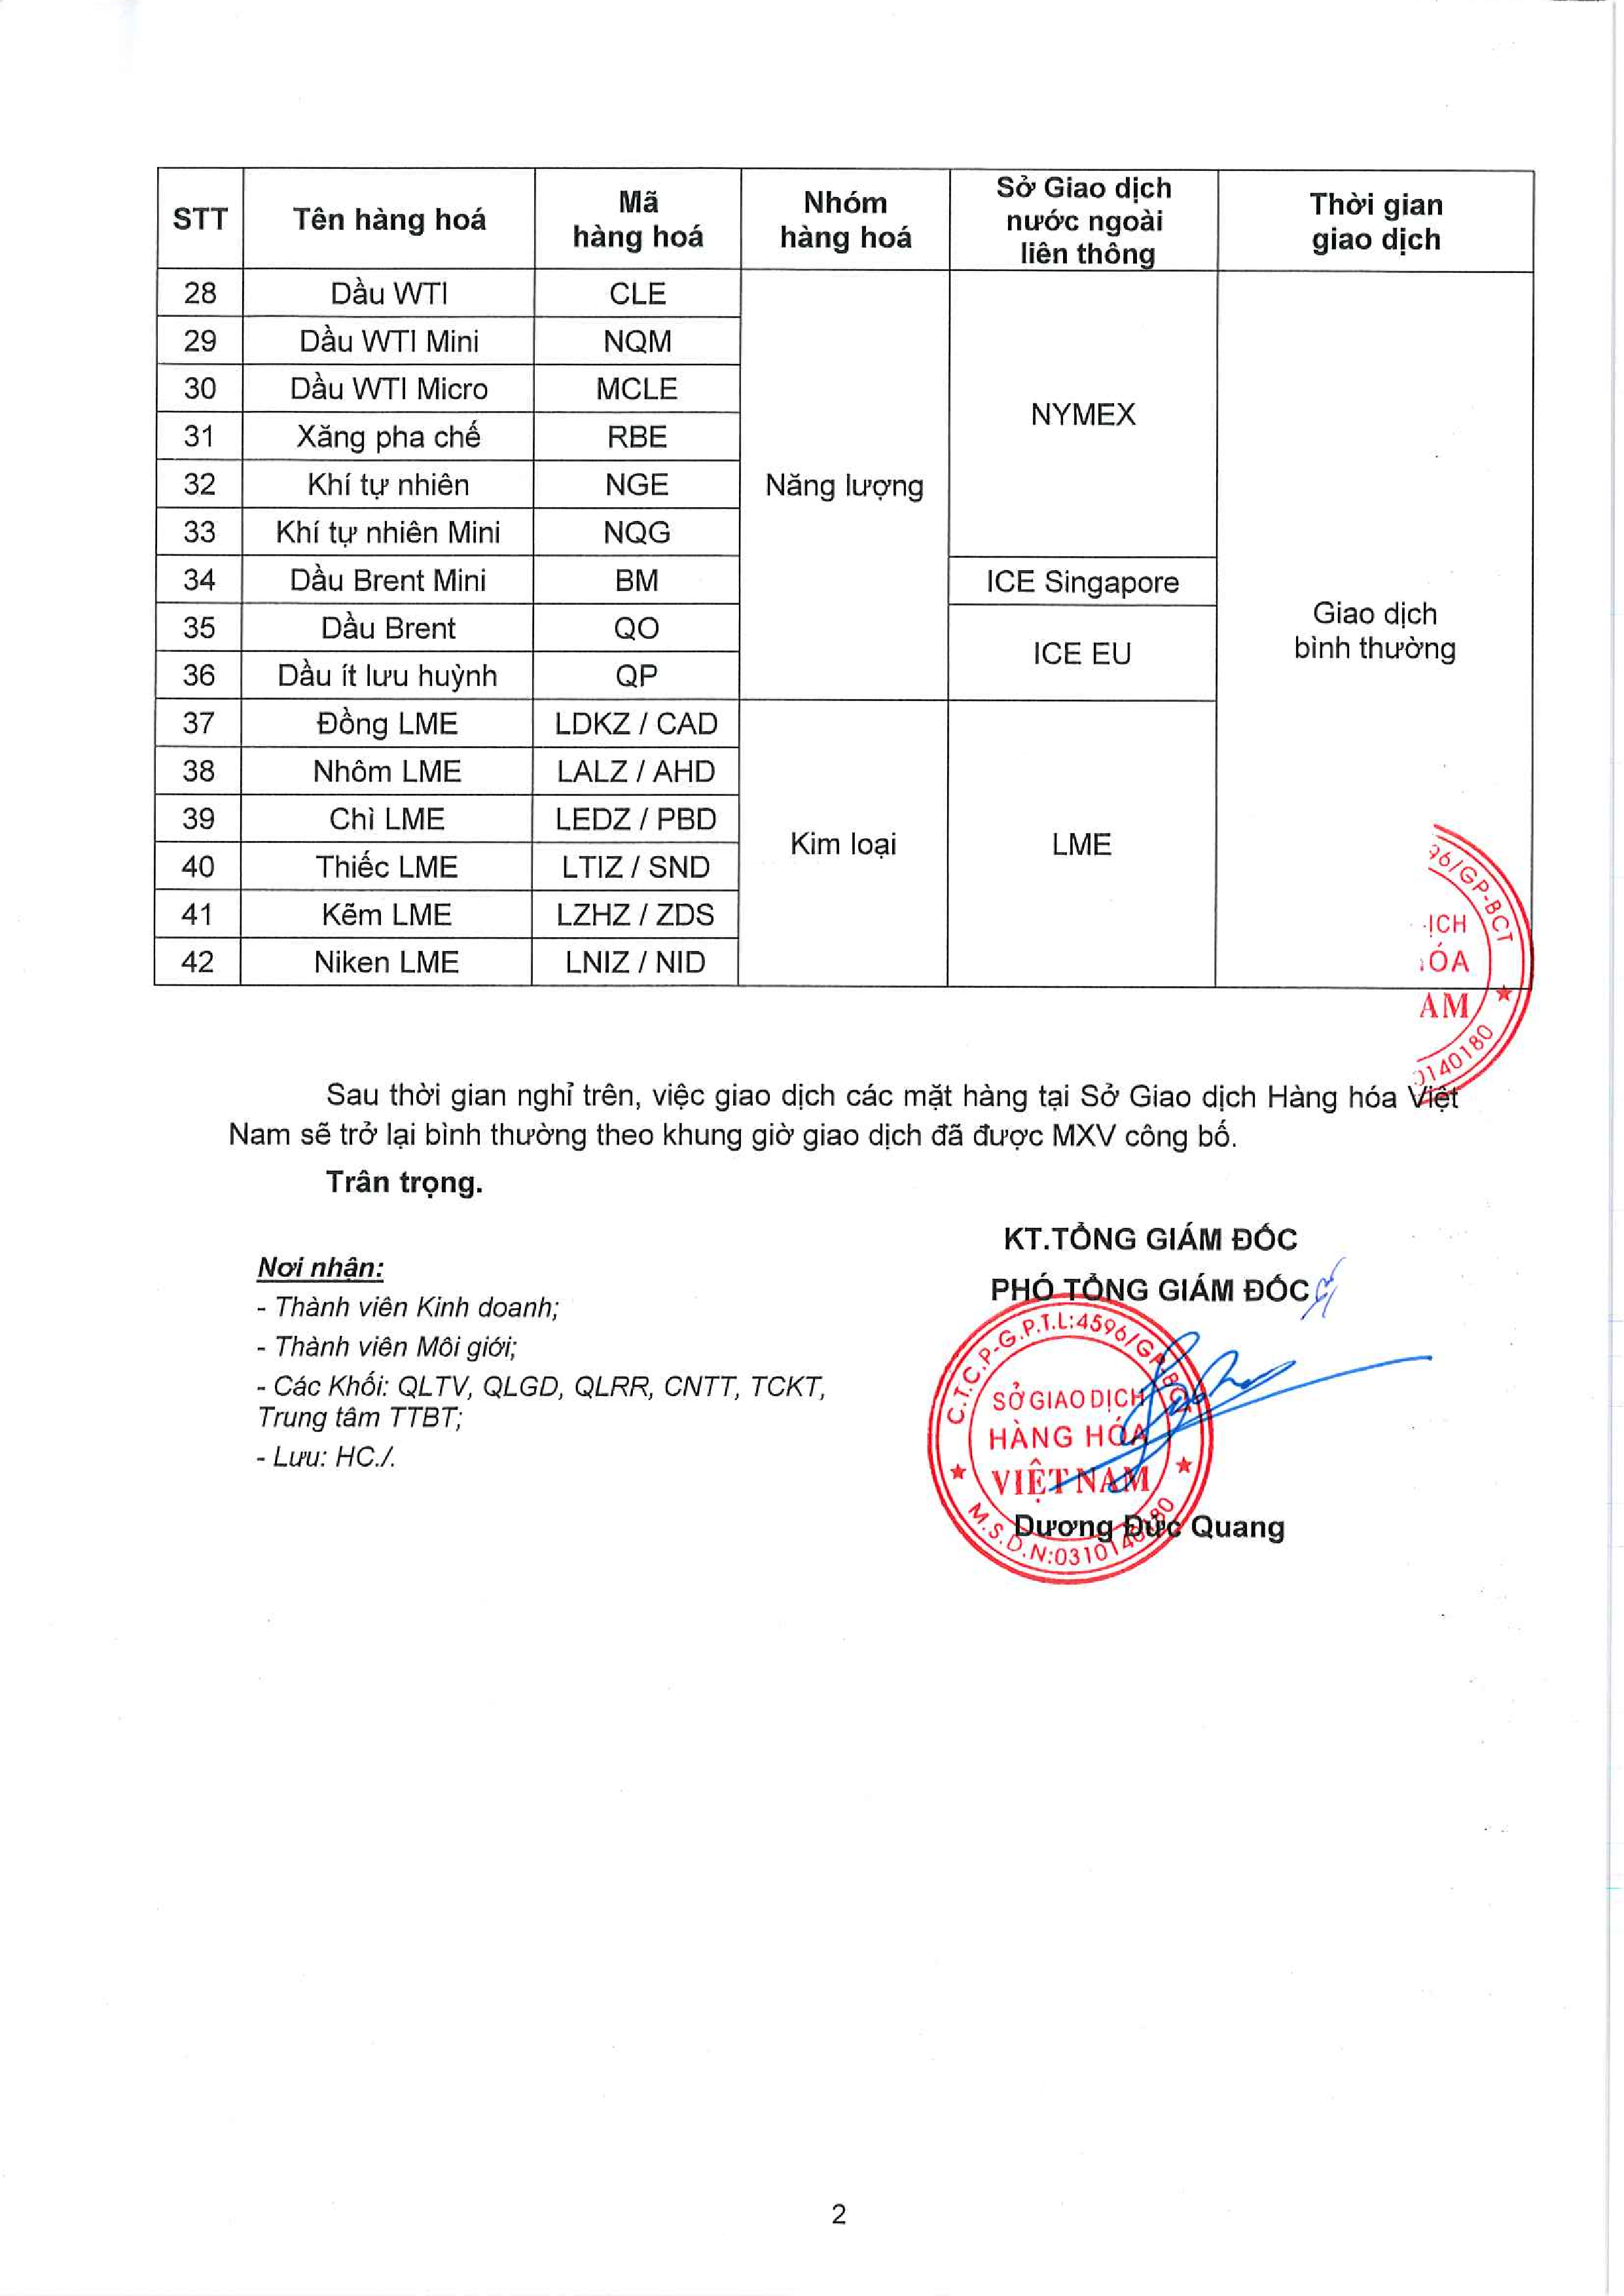 Thông báo nghỉ giao dịch một số sản phẩm tại Sở Giao dịch Hàng hóa Việt Nam (MXV) từ ngày 24/10/2022 (hình 2)